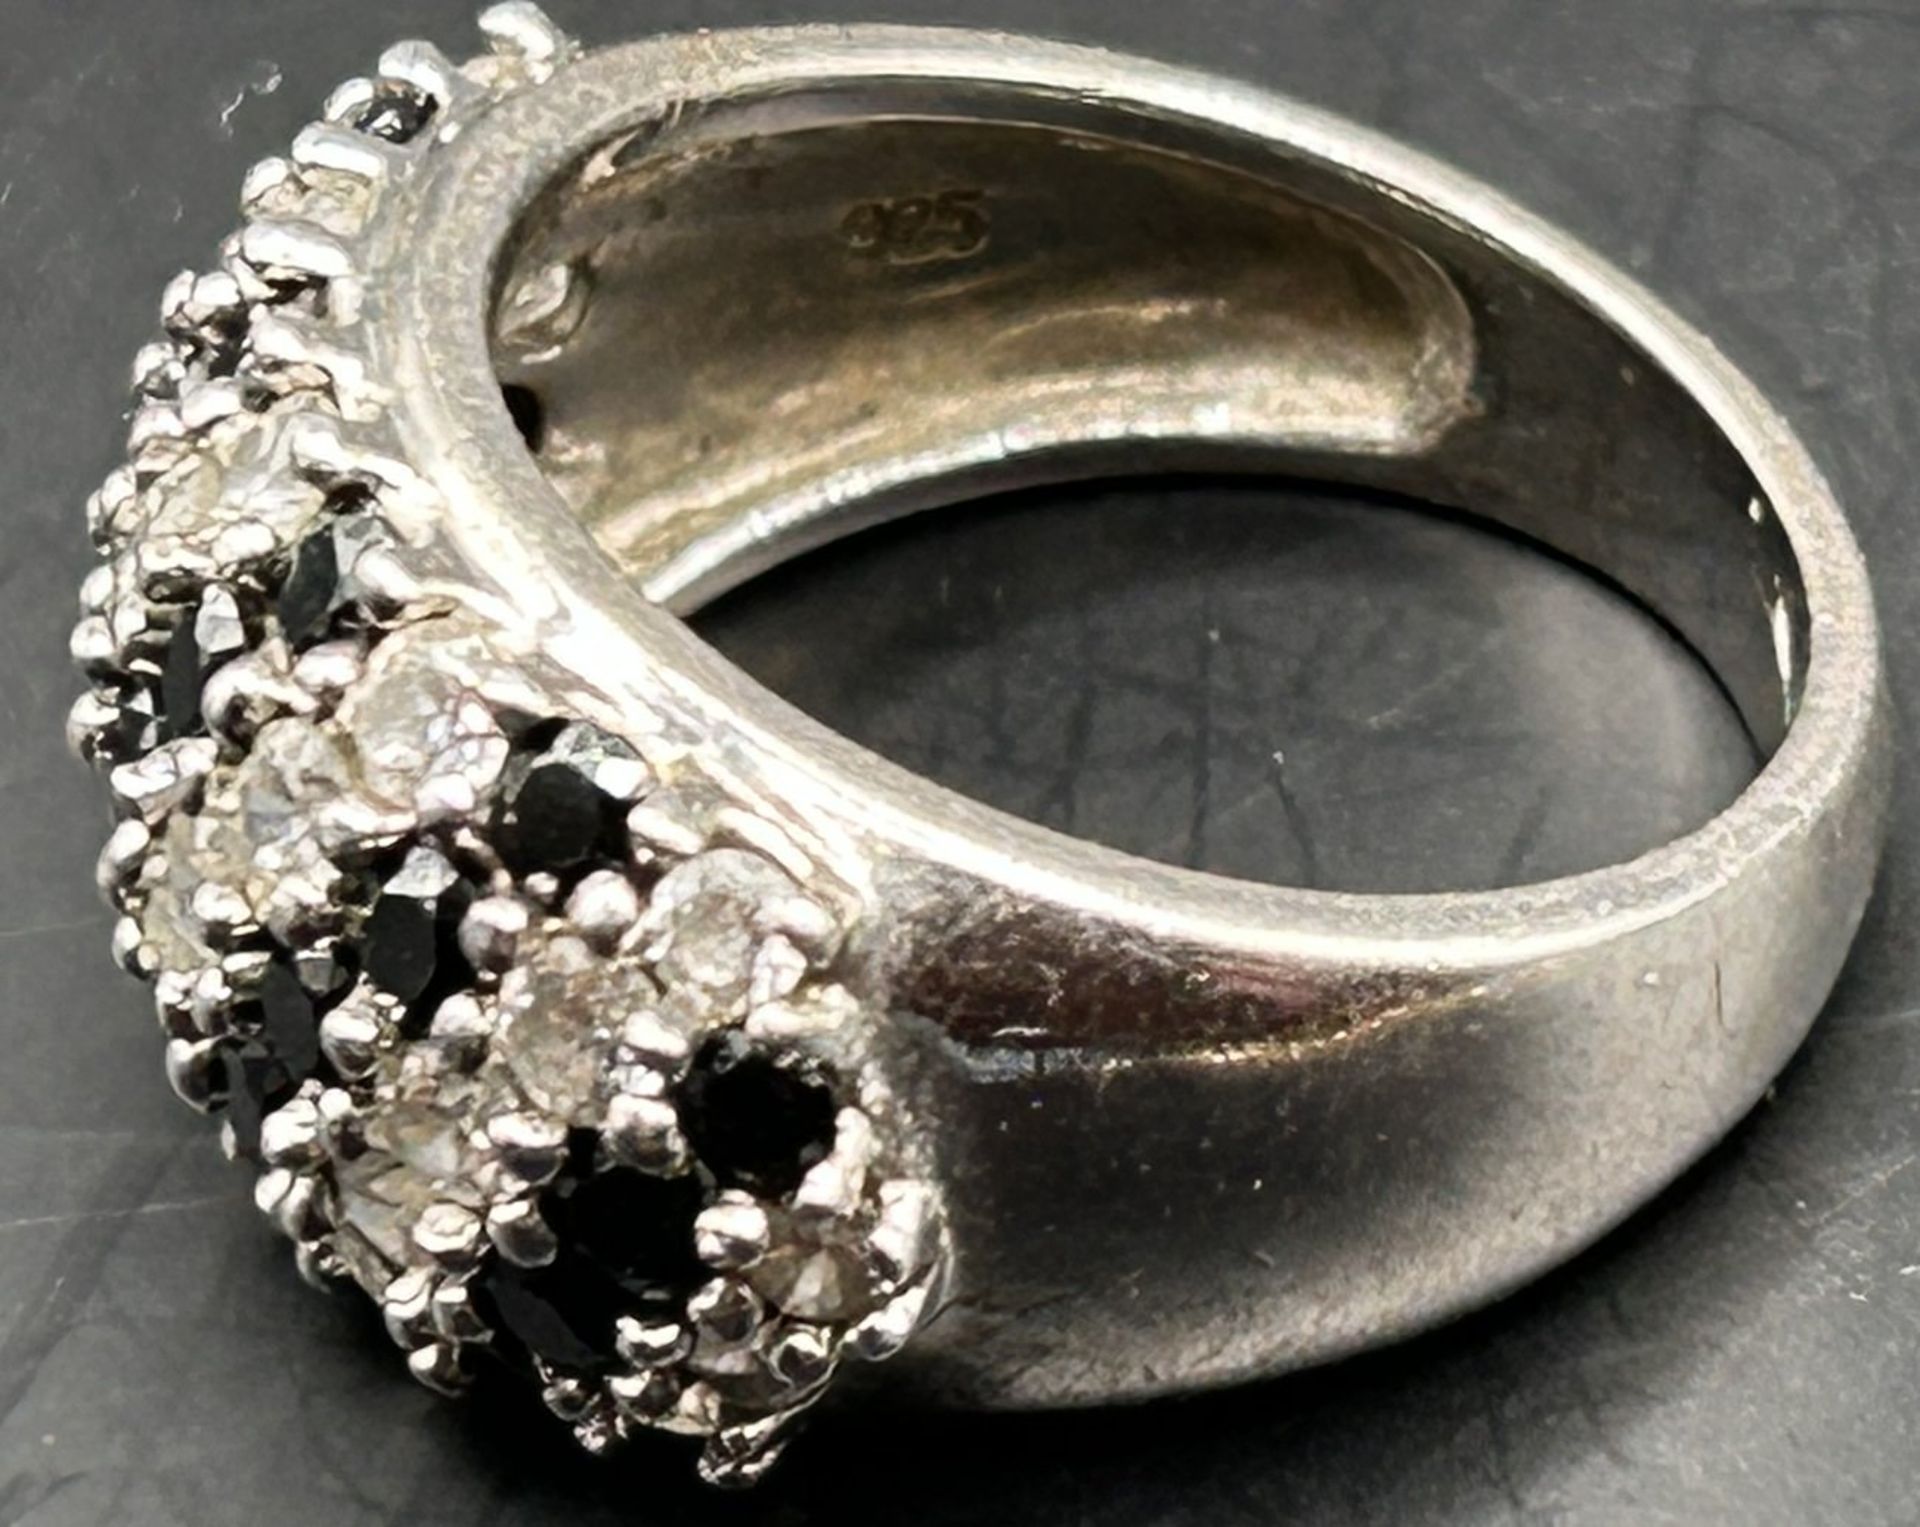 Silberring mit schwarzen und klaren Steinen, -925-, RG 58, 7,2 gr - Bild 5 aus 5